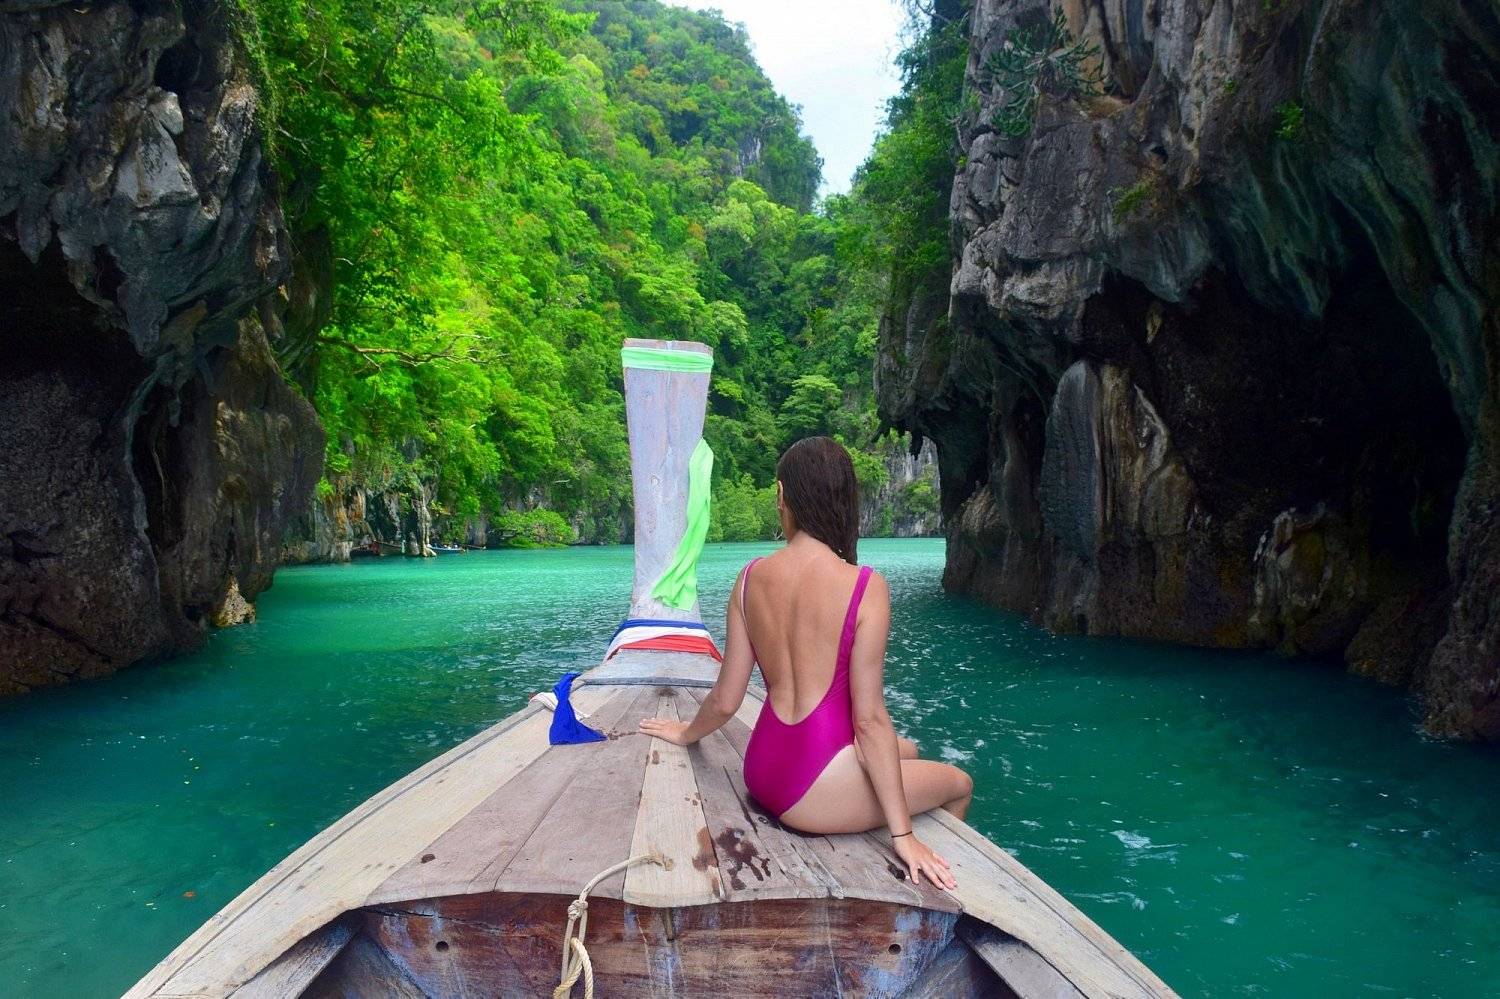 Самуи, таиланд – полный путеводитель по острову